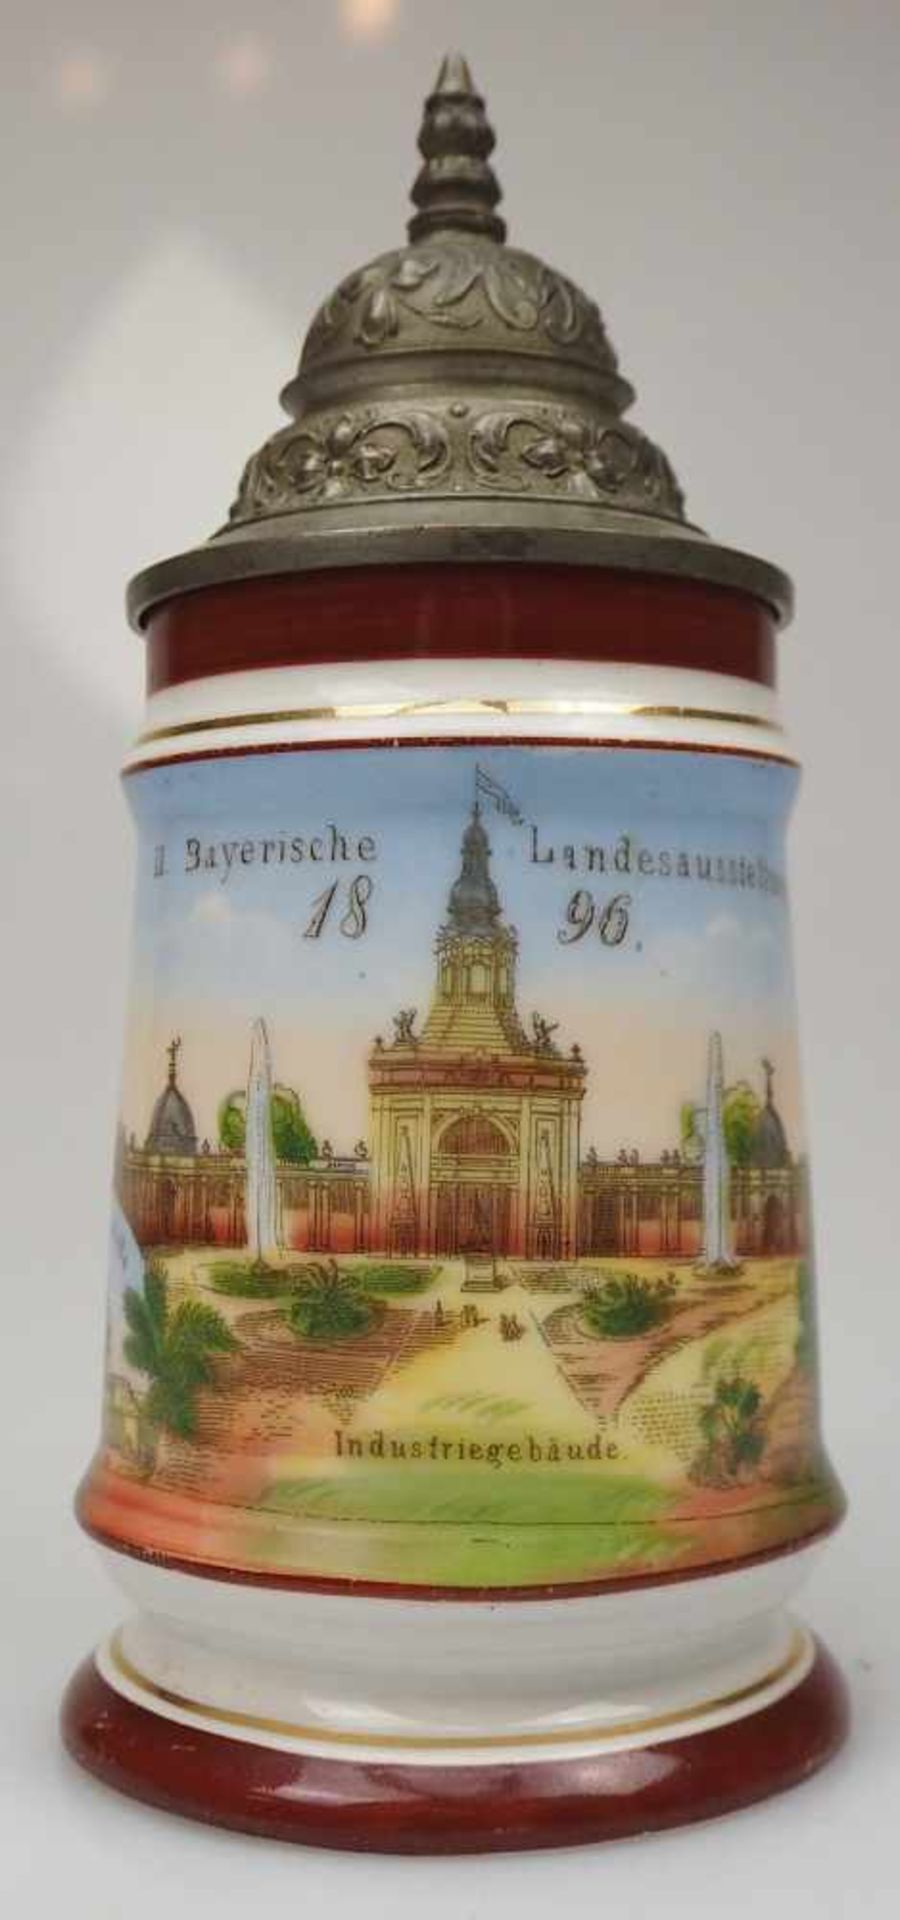 1 Bierkrug bez. "II. Bayerische Landesausstellung 1896"